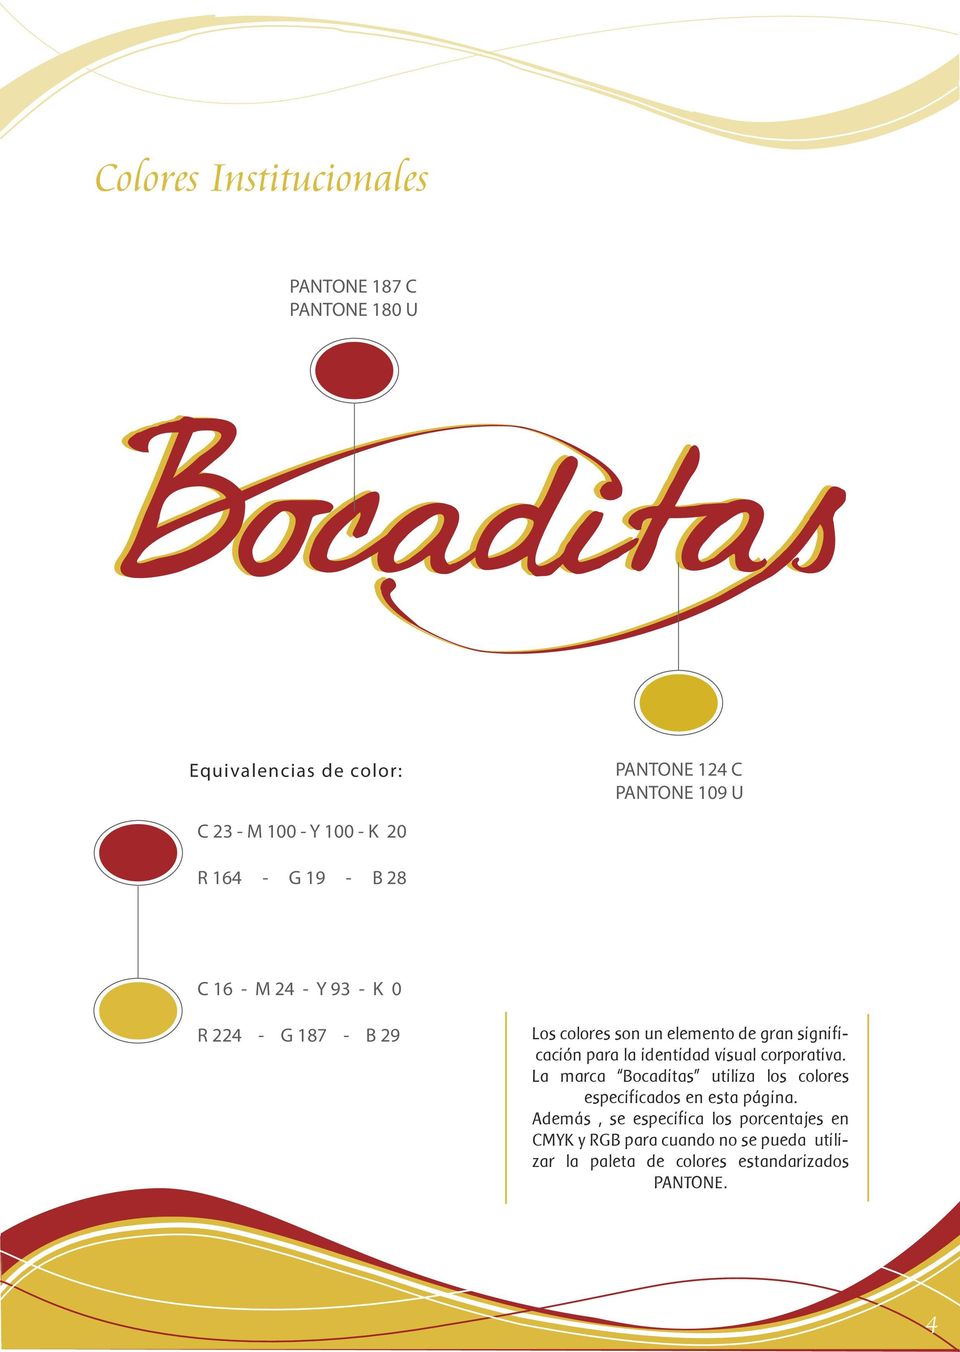 significación para la identidad visual corporativa. La marca Bocaditas utiliza los colores especificados en esta página.